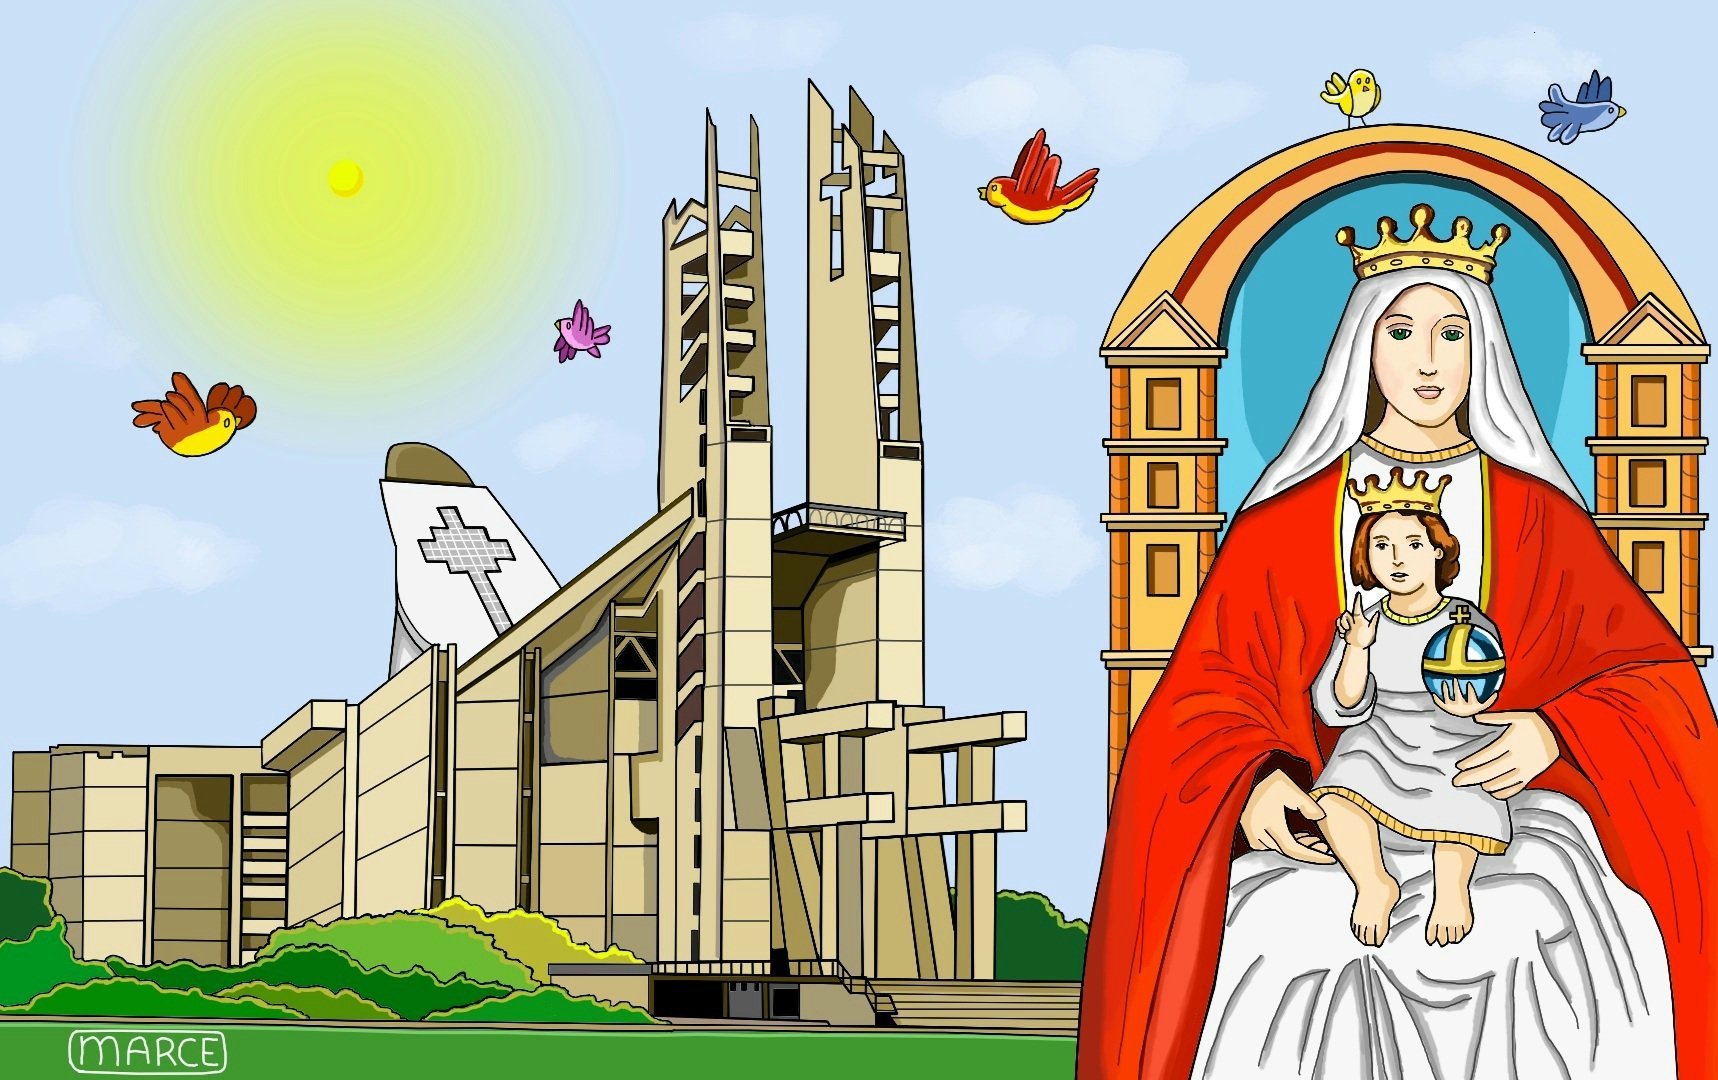 Marce on X: "Basílica Menor Santuario Nacional de Nuestra Señora de Coromoto,  se encuentra a 25 kilómetros de la ciudad de Guanare, Portugues. Seguimos  dibujando a Venezuela y a Valencia. Dibujo digital.